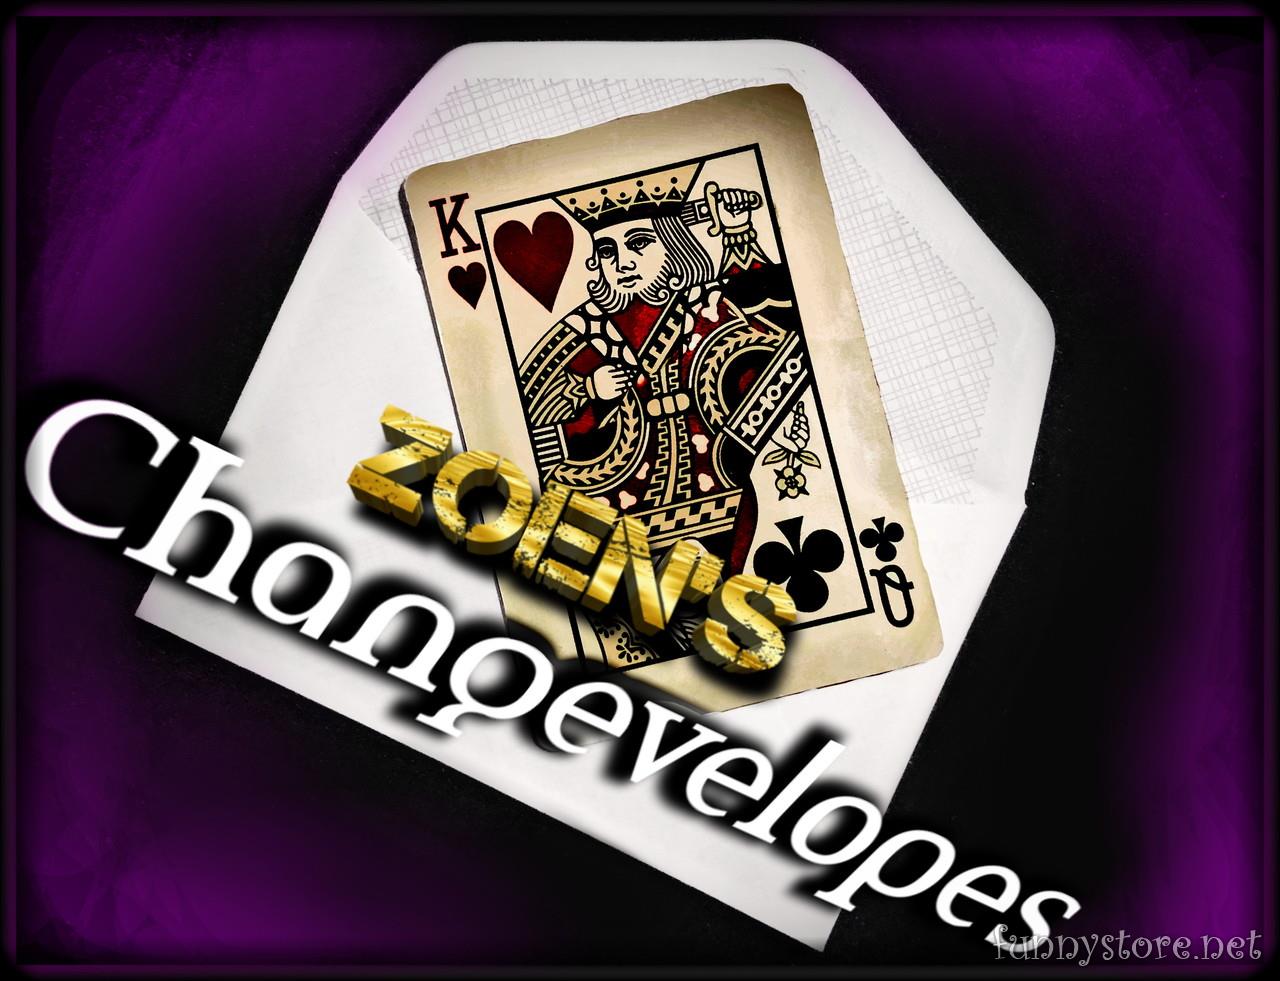 Zoen's - Changevelopes